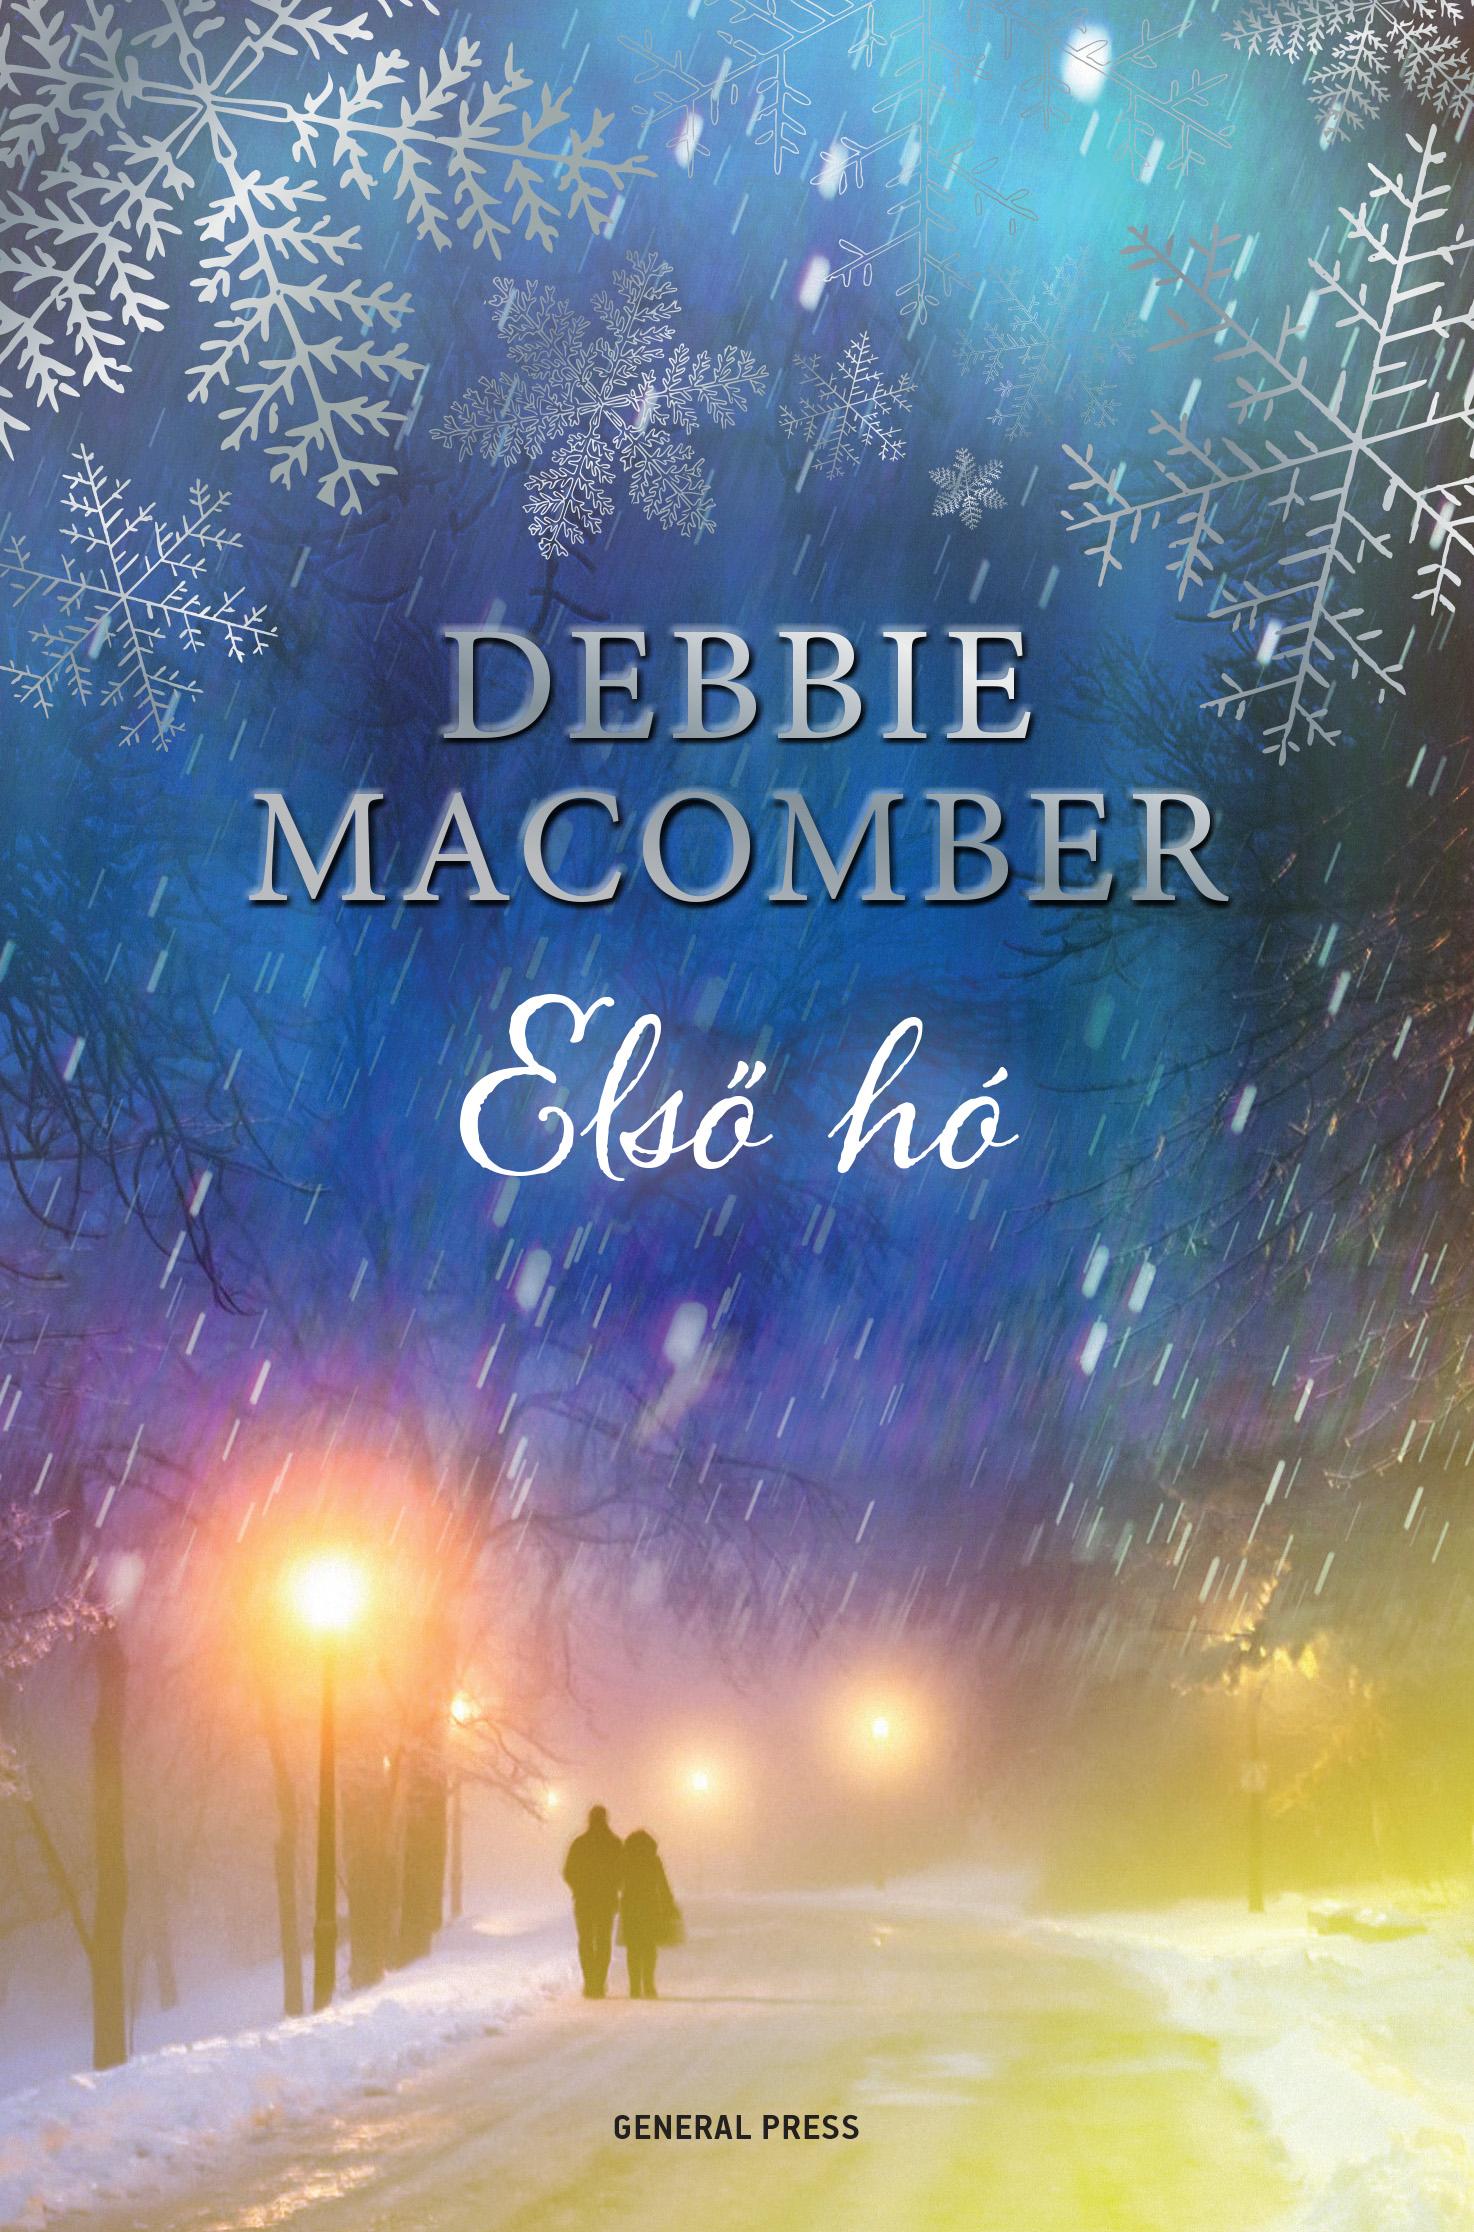 Debbie Macomber - Első hó